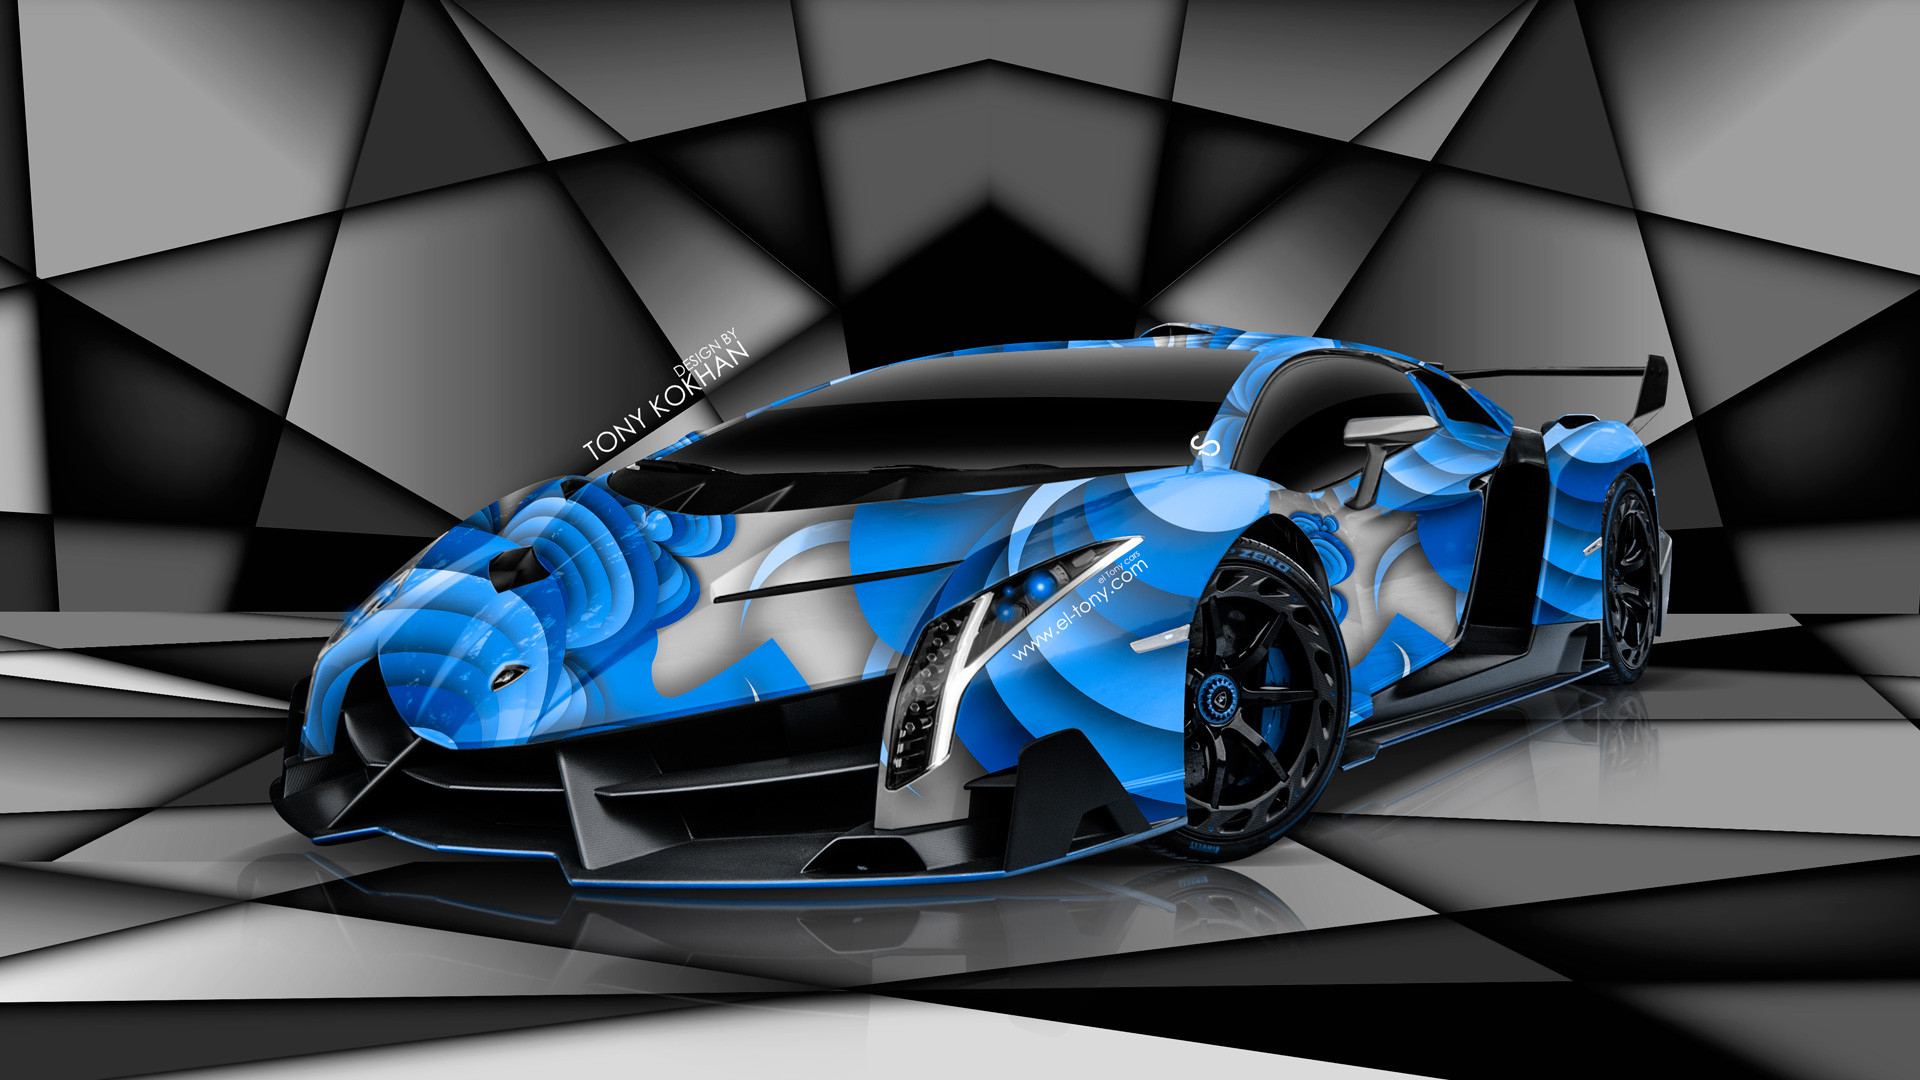 Light Blue Lamborghini Veneno Pixshark Image